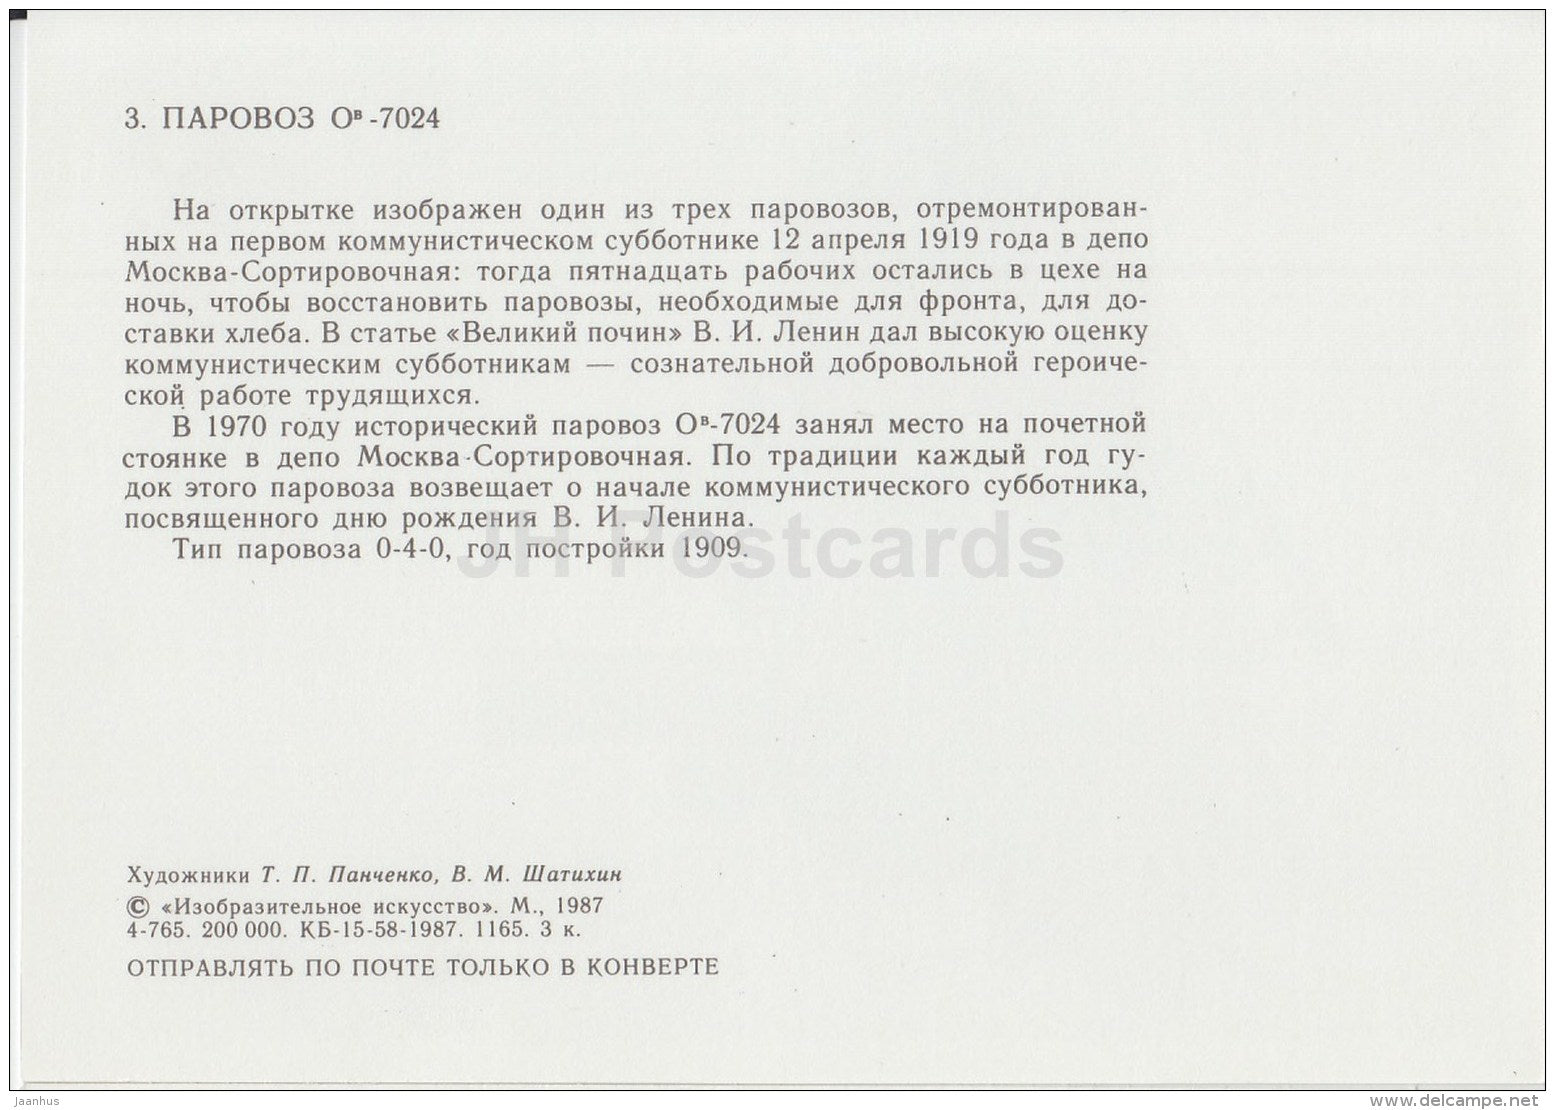 OV-7024 - locomotive - train - railway - 1987 - Russia USSR - unused - JH Postcards